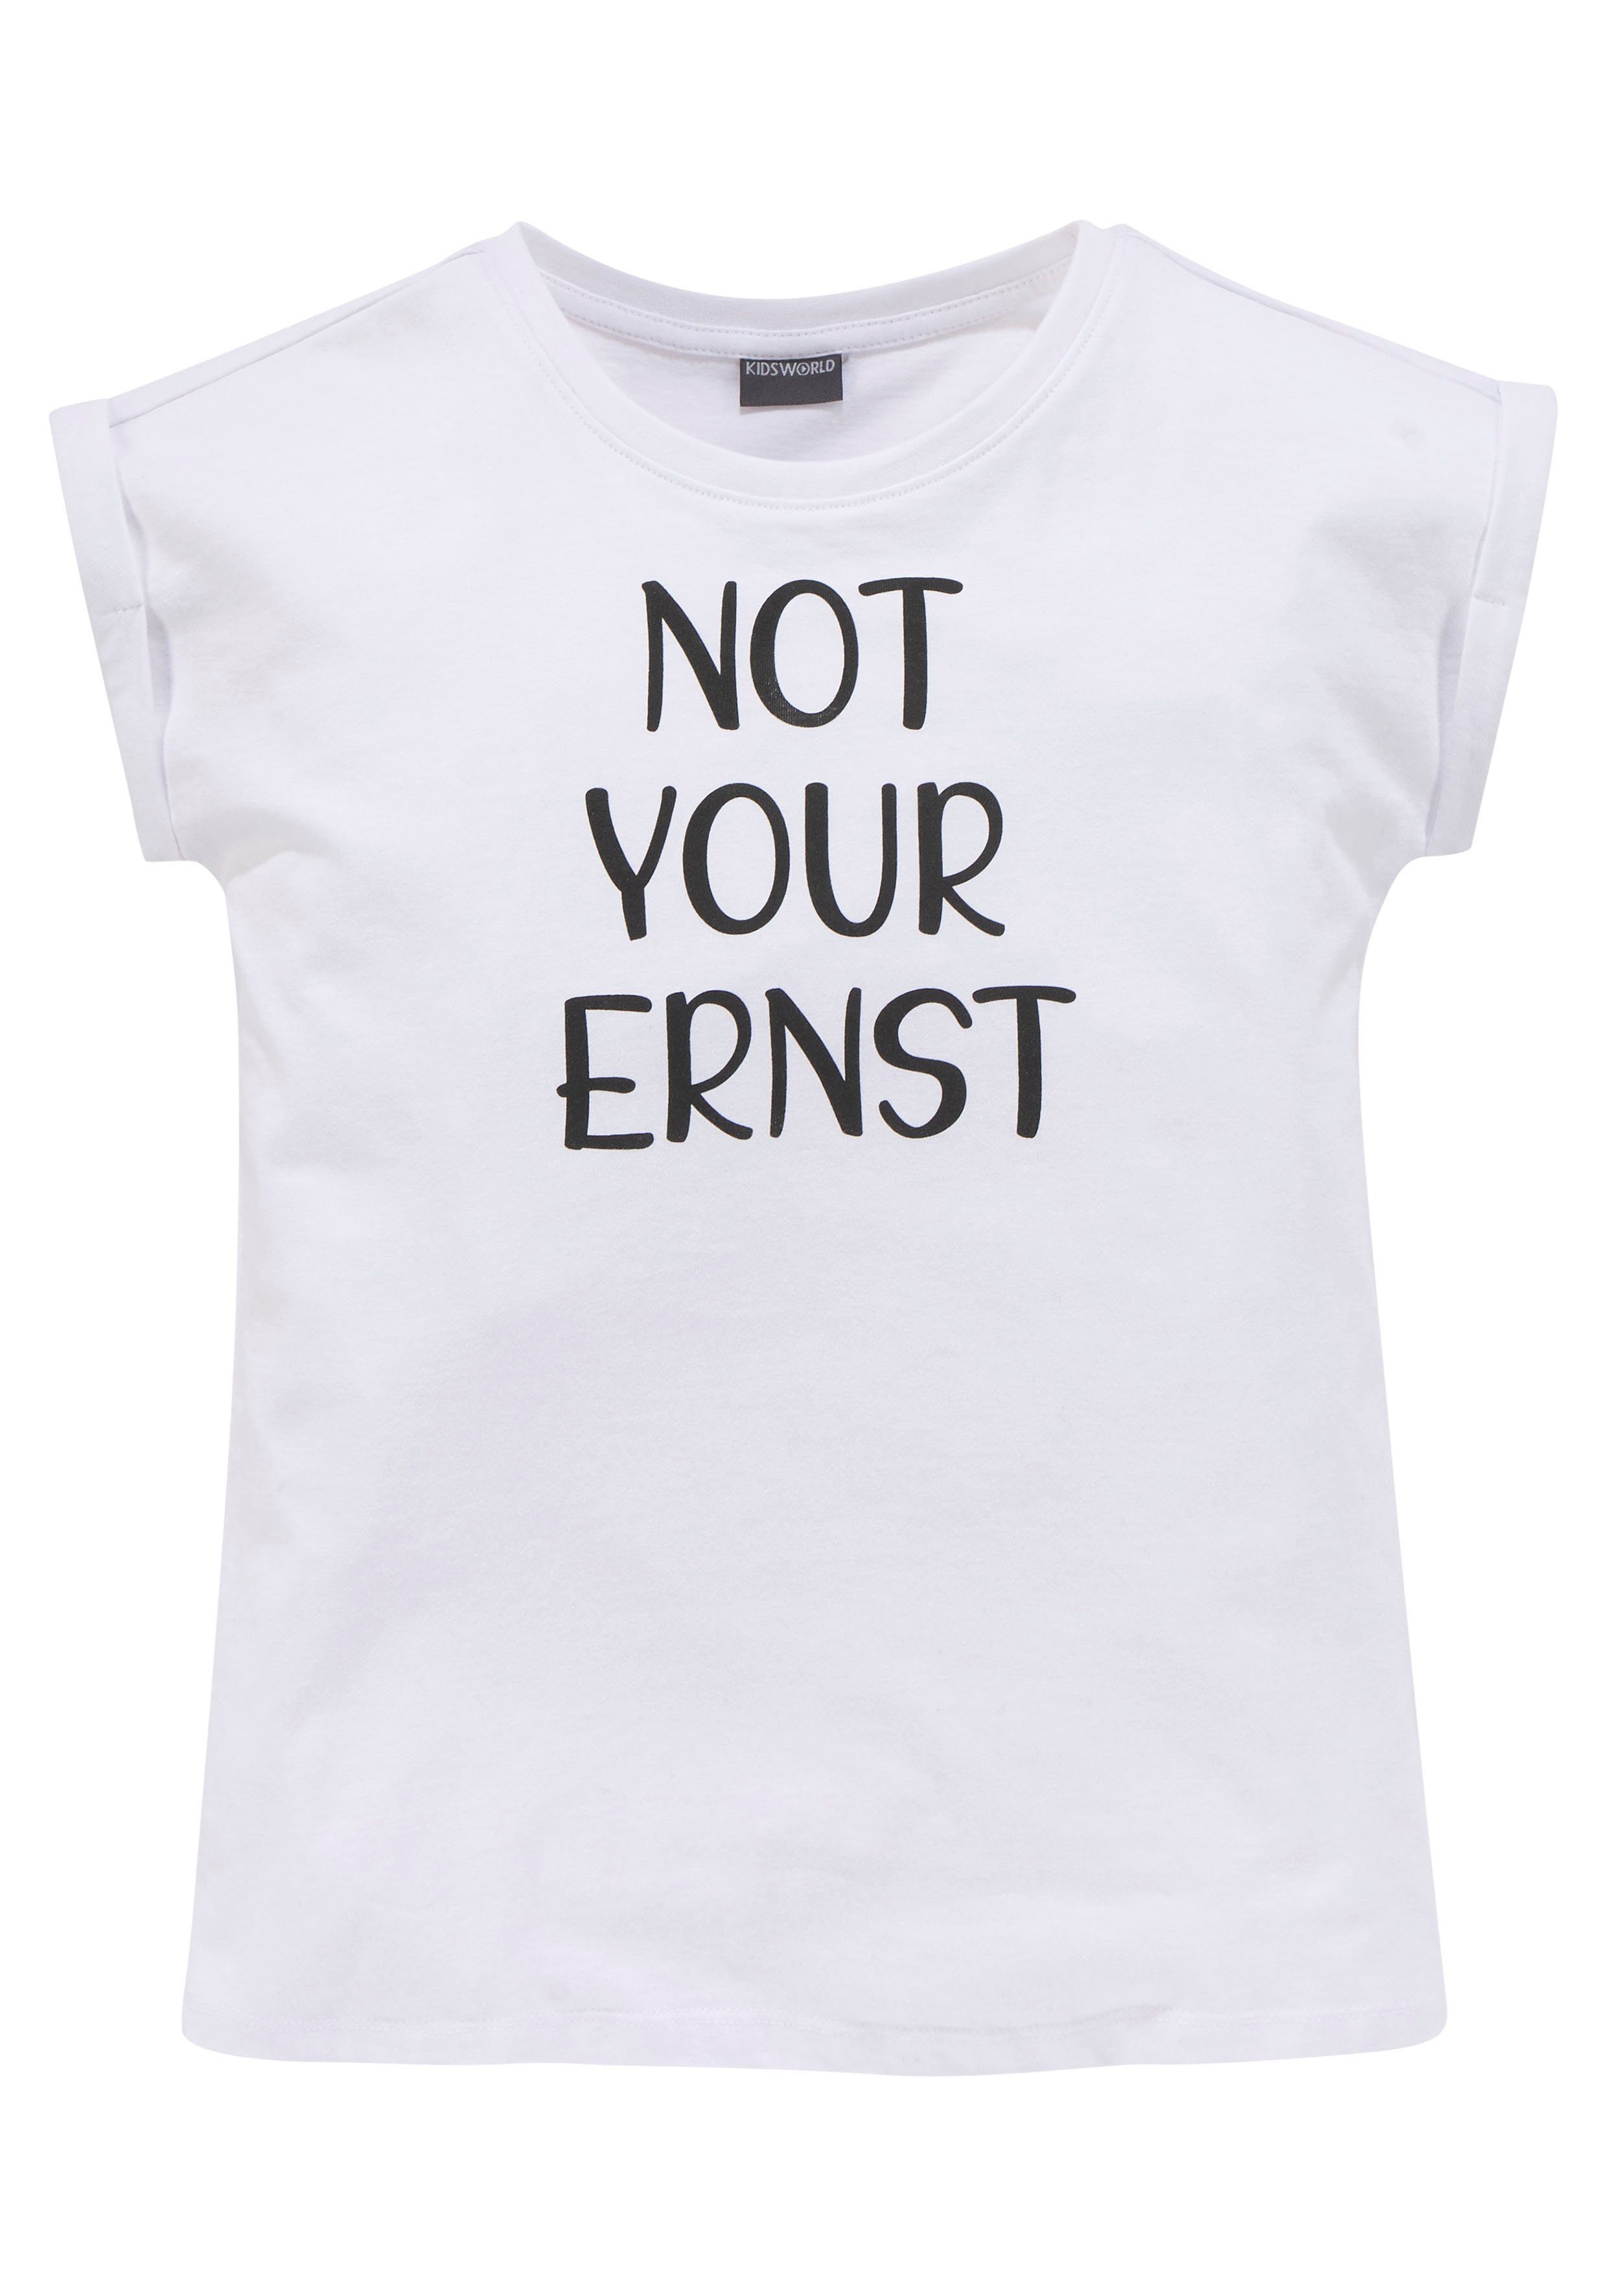 kleinem ERNST T-Shirt YOUR mit Ärmelaufschlag NOT Form KIDSWORLD legere